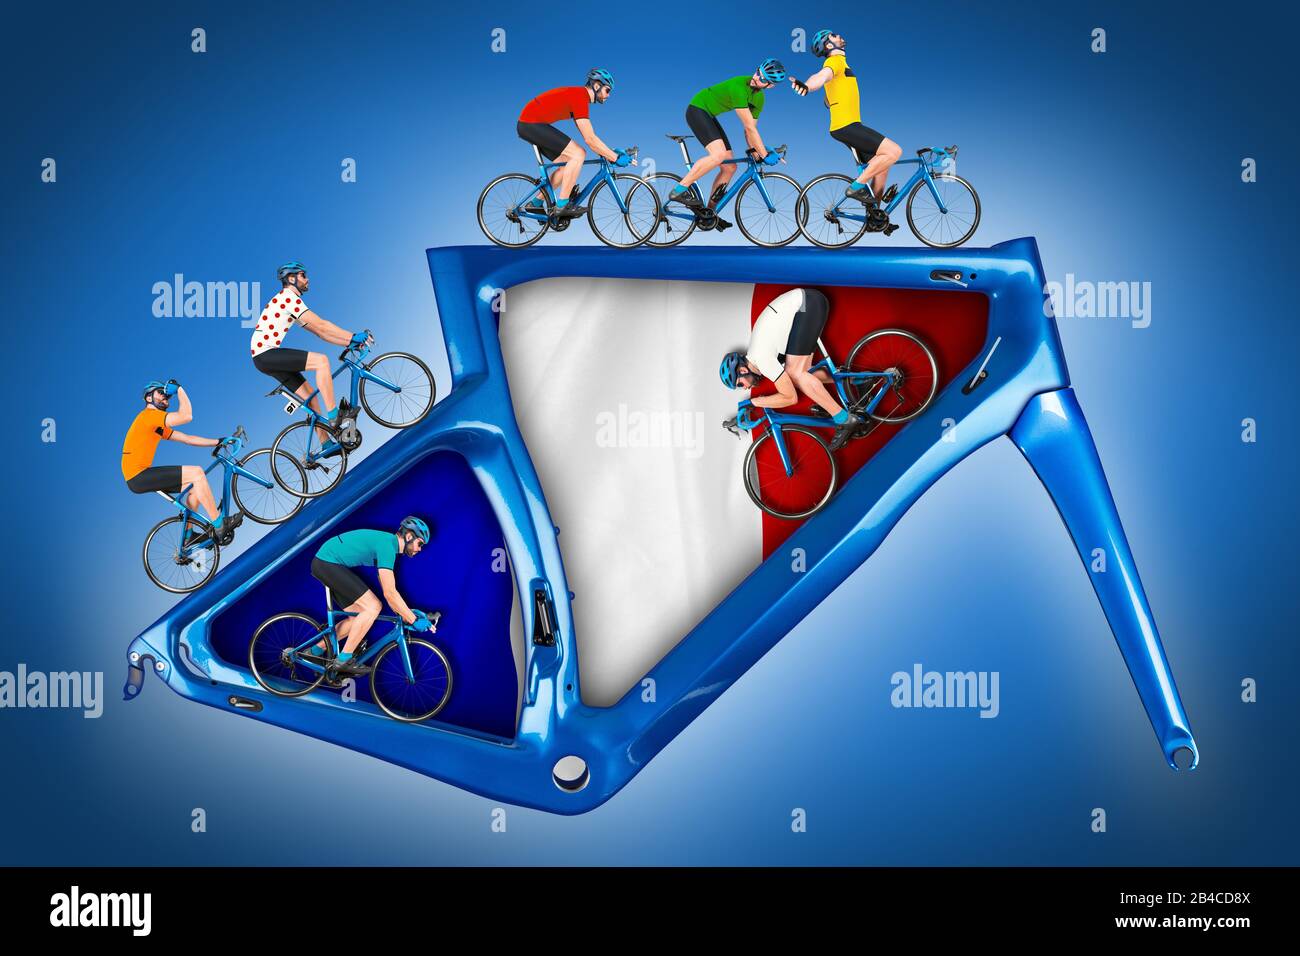 Radfahrer im Wettkampftrikot auf Rennrad auf einem modernen blauen Carbonrahmen auf blauem Hintergrund mit französisch fahren Stockfoto